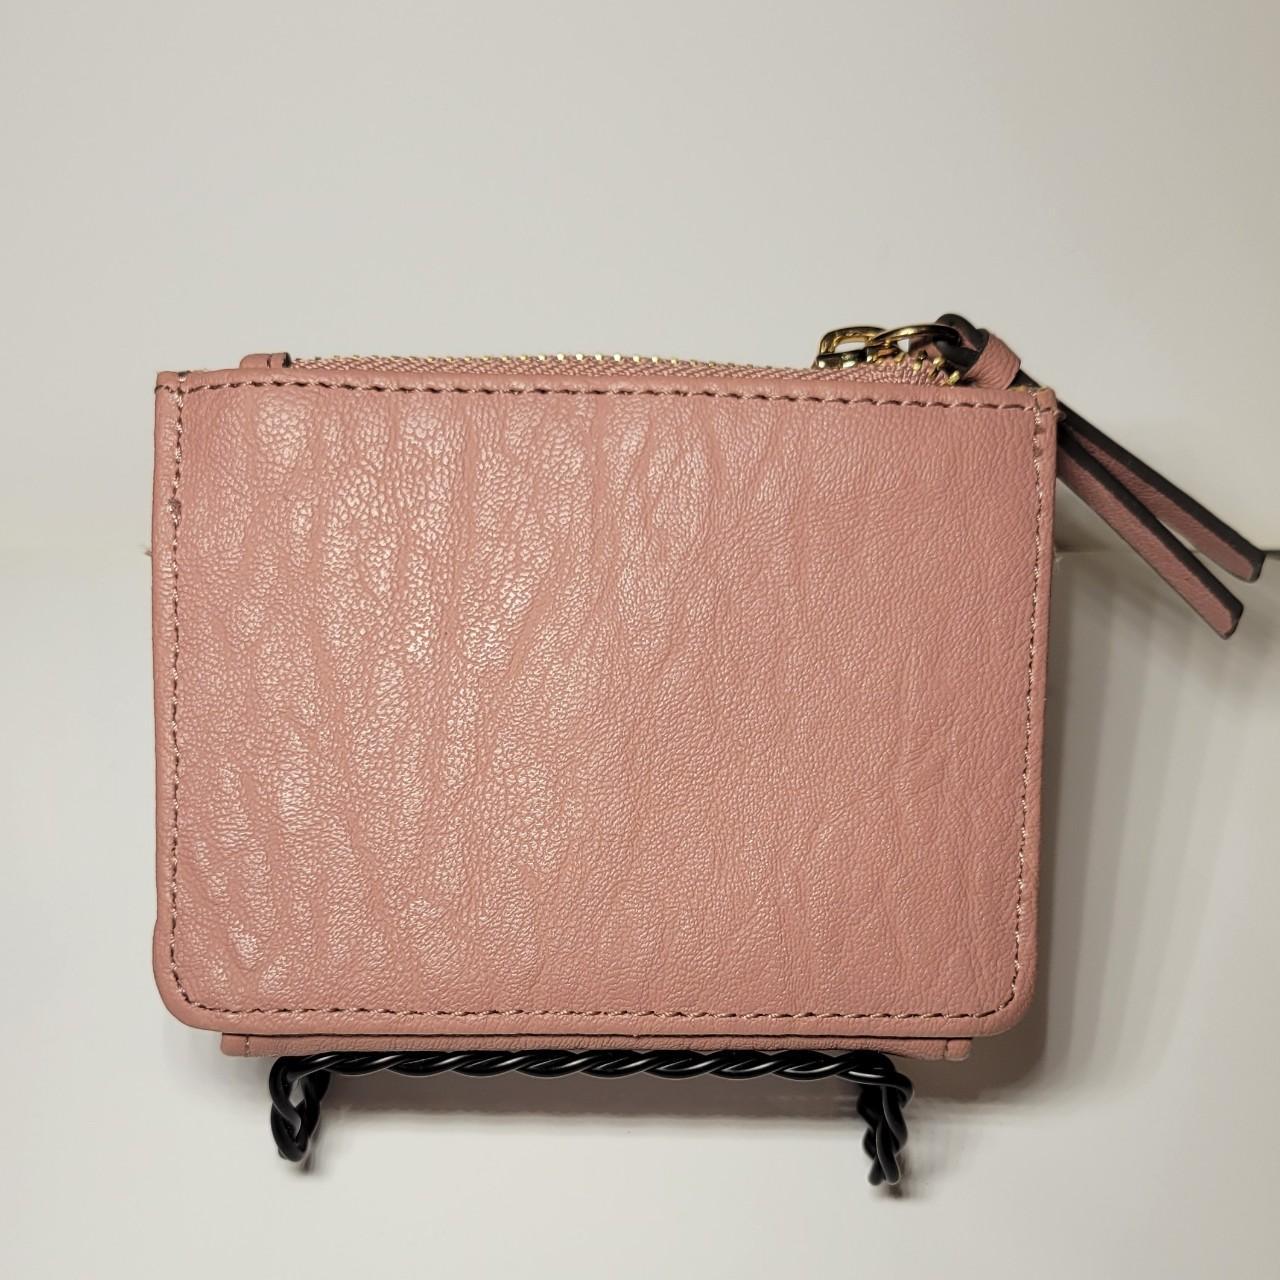 JESSICA SIMPSON PURSE Shoulder Bag Neon Hot Pink Faux Snake Skin PVC  Barbiecore $17.43 - PicClick